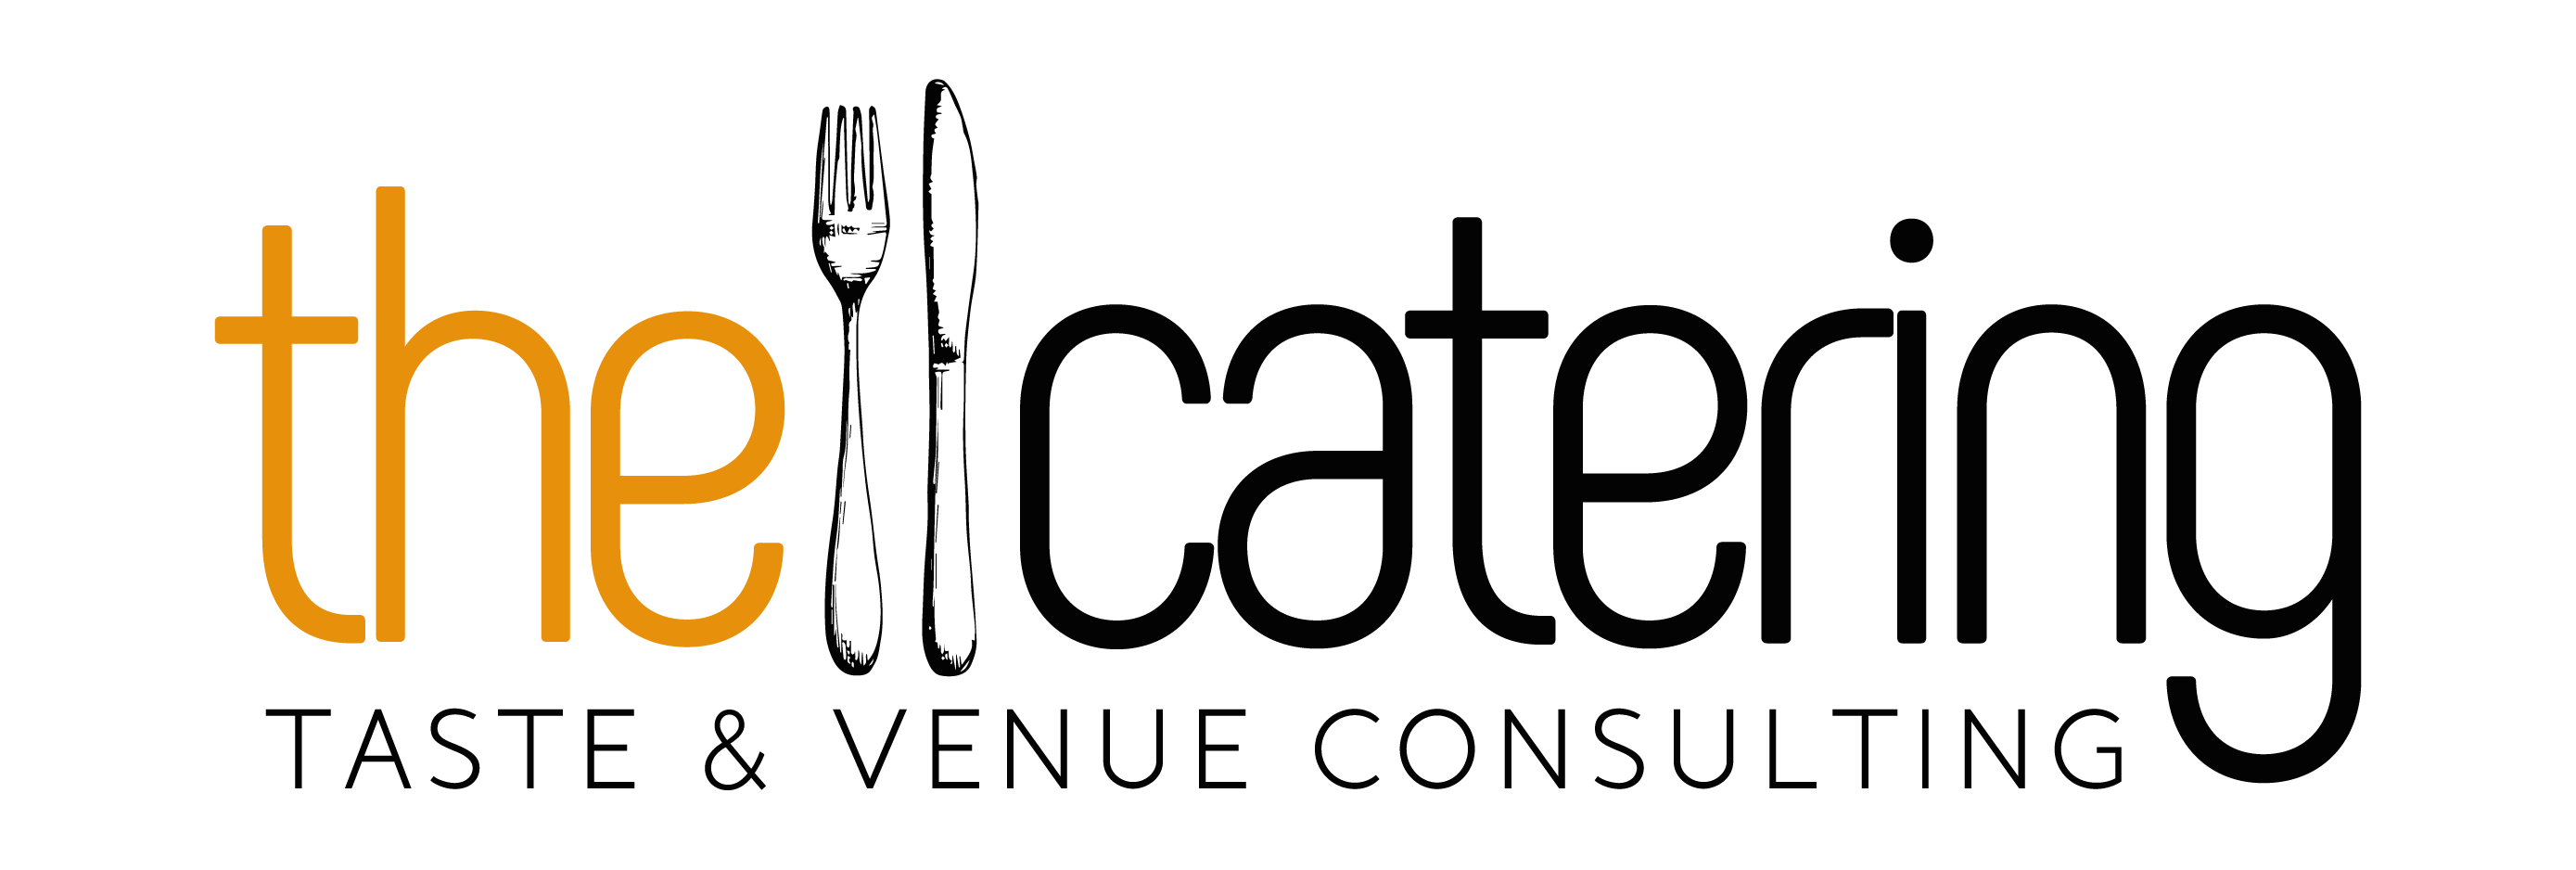 Logo THECATERING Positivo | Digital Innovation Days